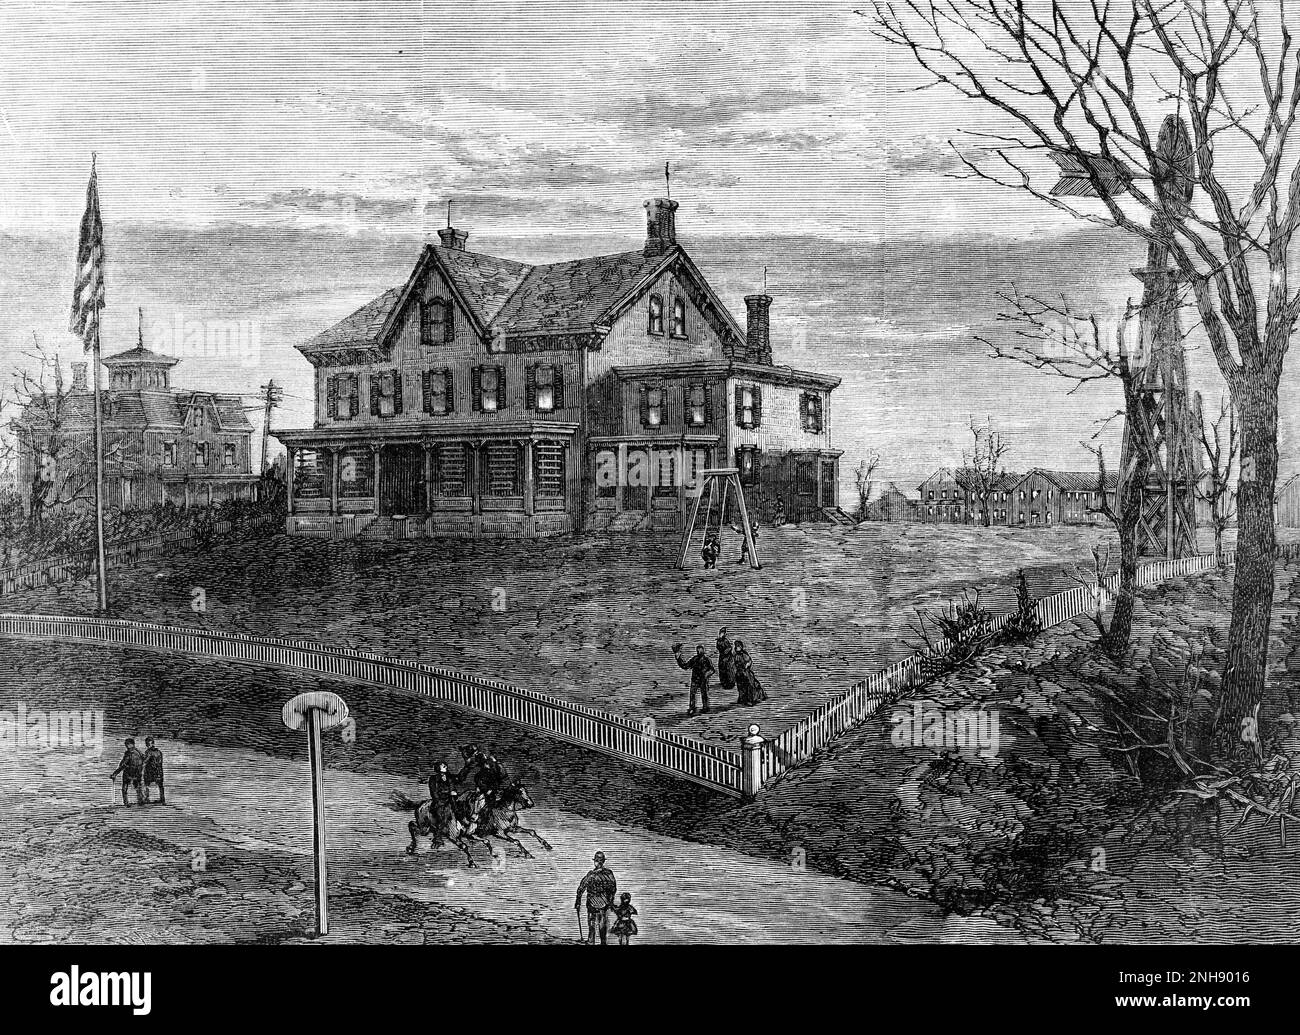 La maison de l'inventeur Thomas Edison à Menlo Park, New Jersey. D'un croquis de Theodore R. Davis de Harper's Weekly, 1880. Banque D'Images